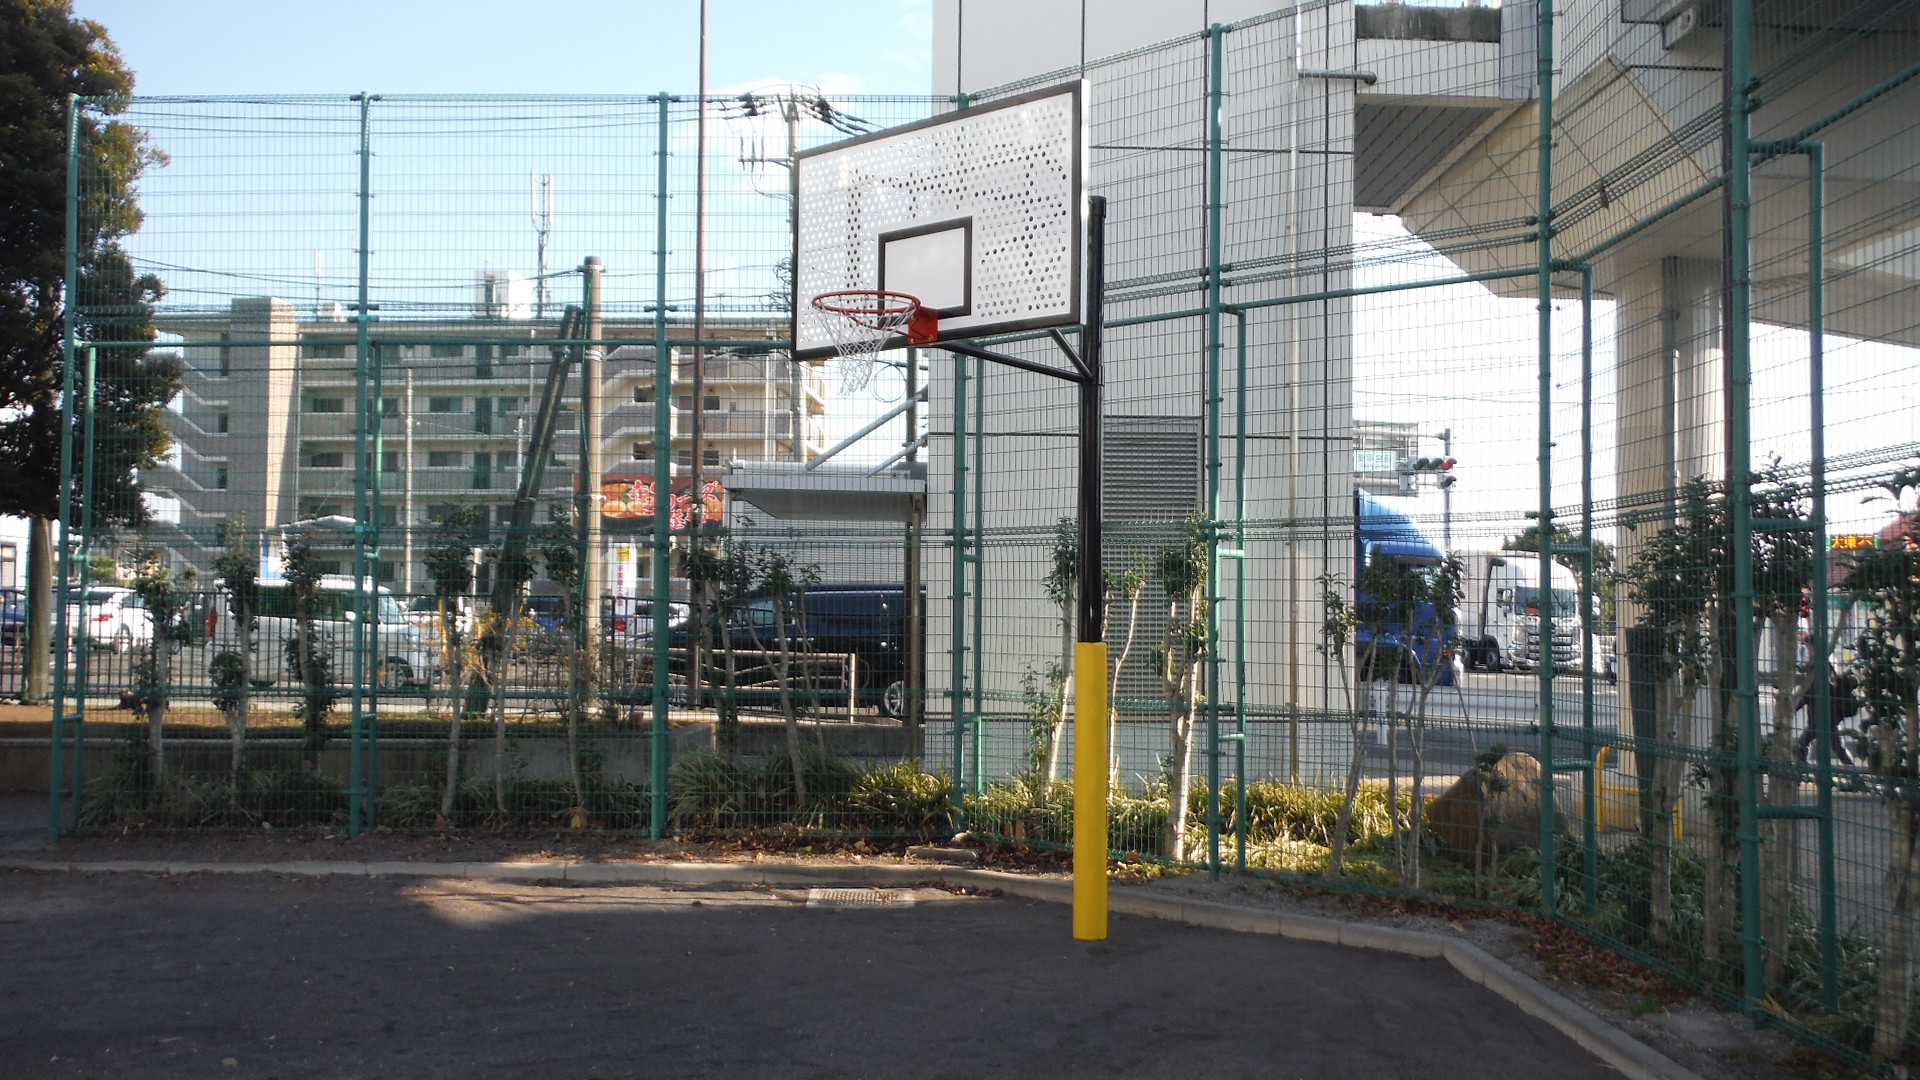 歩道橋の階段の左側には広場があり、バスケットゴールが設置されている公園の写真